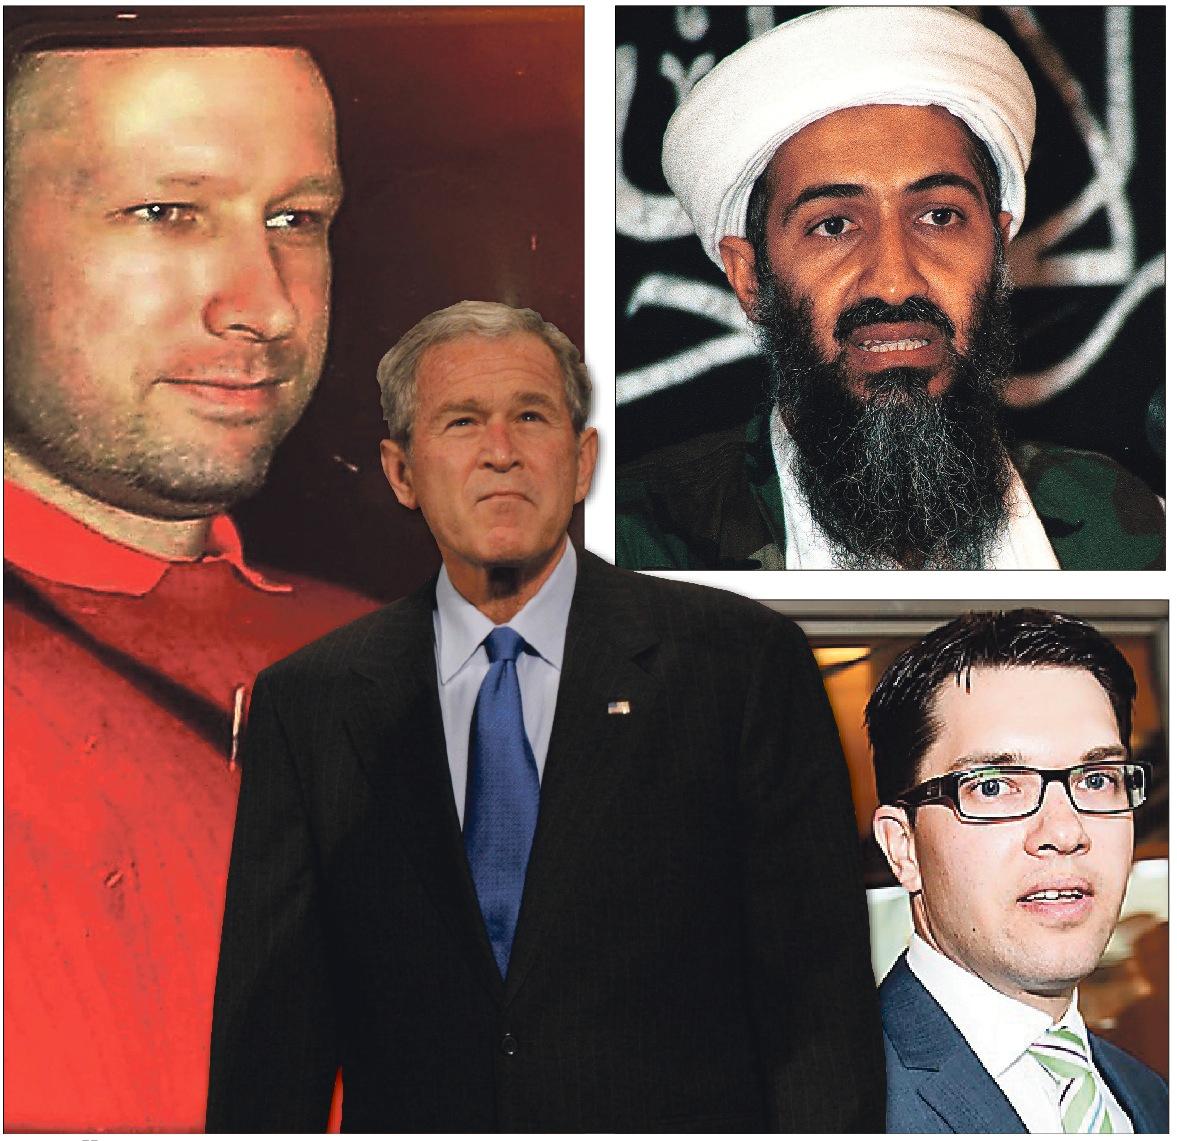 De hänger ihop – George W Bush, Anders Behring Breivik, Jimmie Åkesson och Usama bin Ladin.